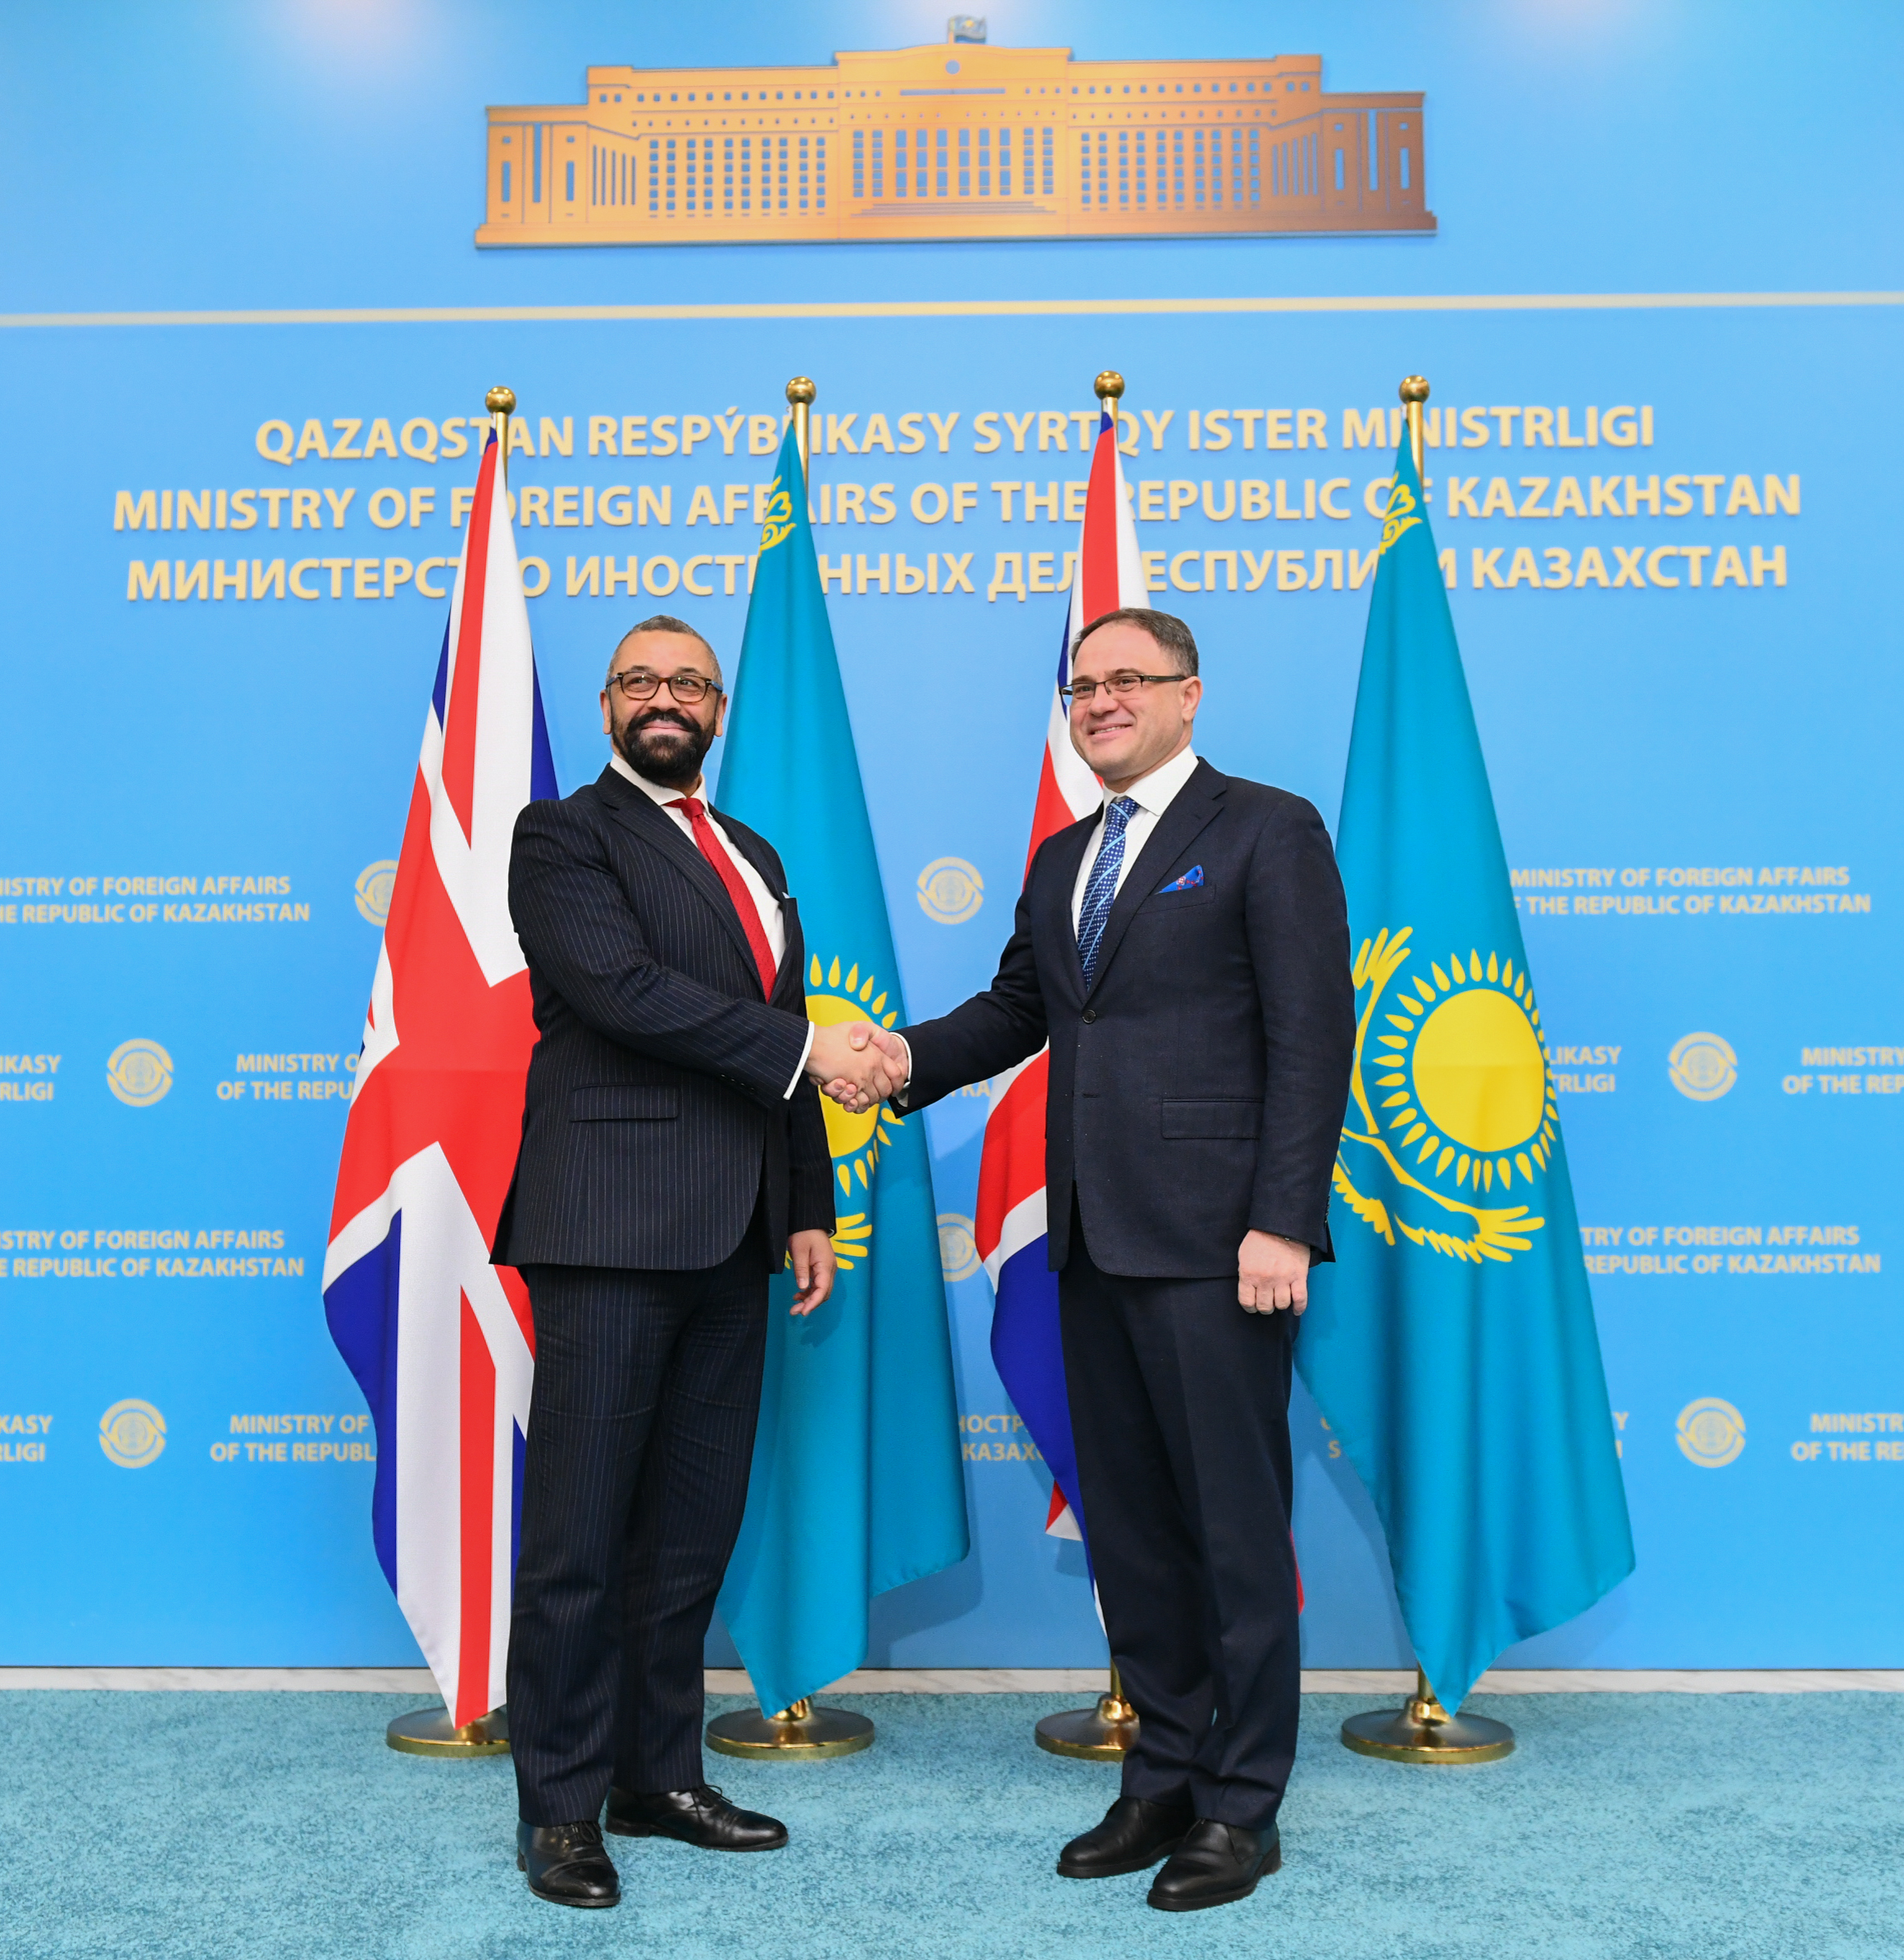 Укрепление всестороннего партнерства   обсуждено в МИД Казахстана с главой британского Форин-офиса